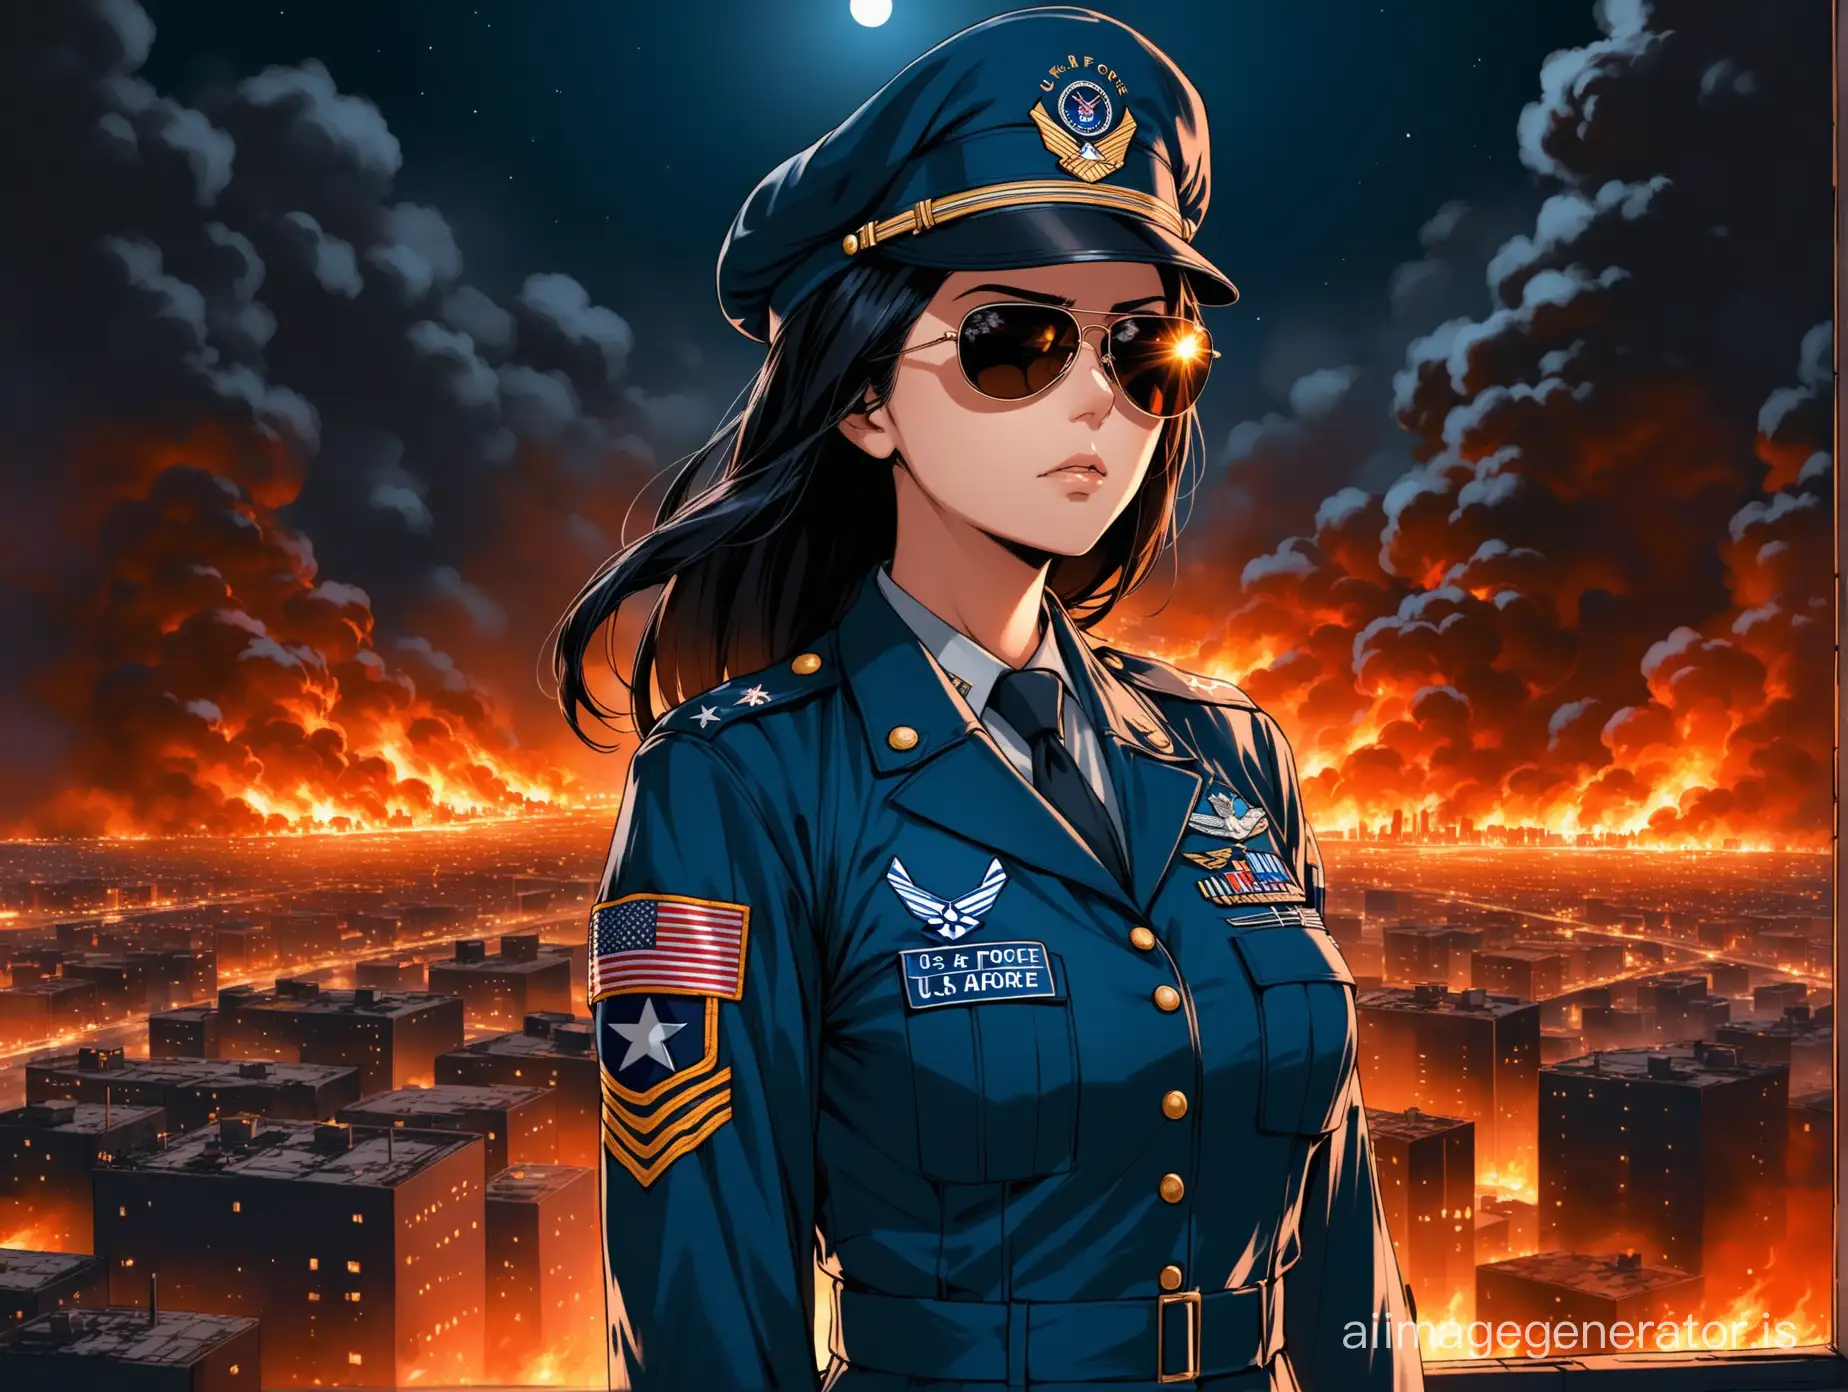 Серьёзная женщина с чёрными волосами в форме офицера ВВС США в тёмных очках-авиаторах в фуражке ВВС стоит с руками за спину и смотрит вперёд-вправо, на фоне ночного горящего города